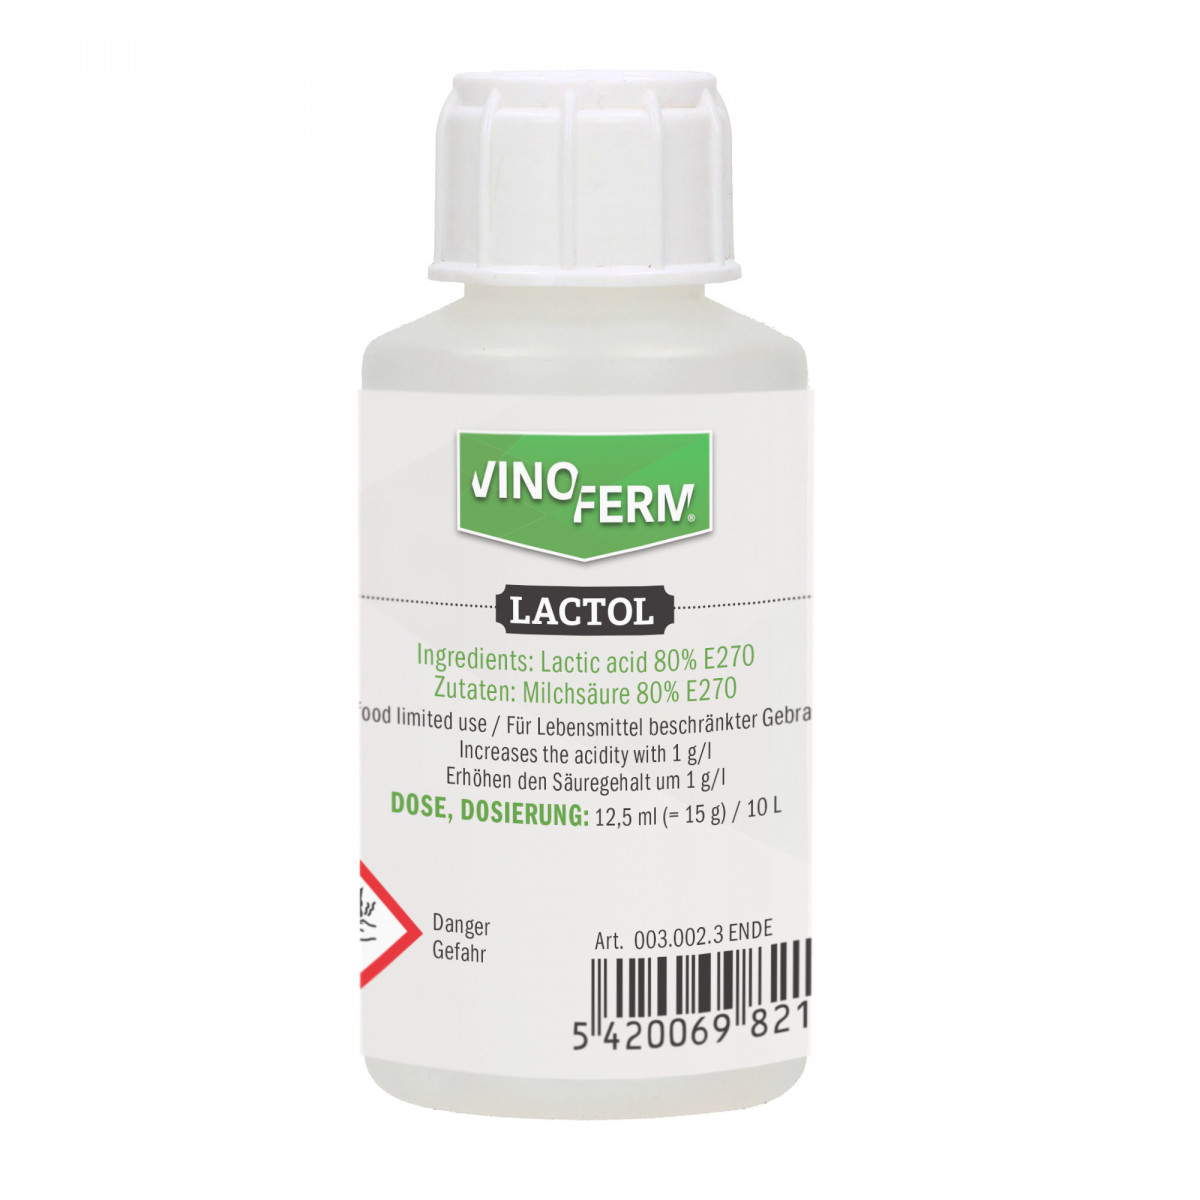 lactic acid 80% VINOFERM lactol 100ml ENDE